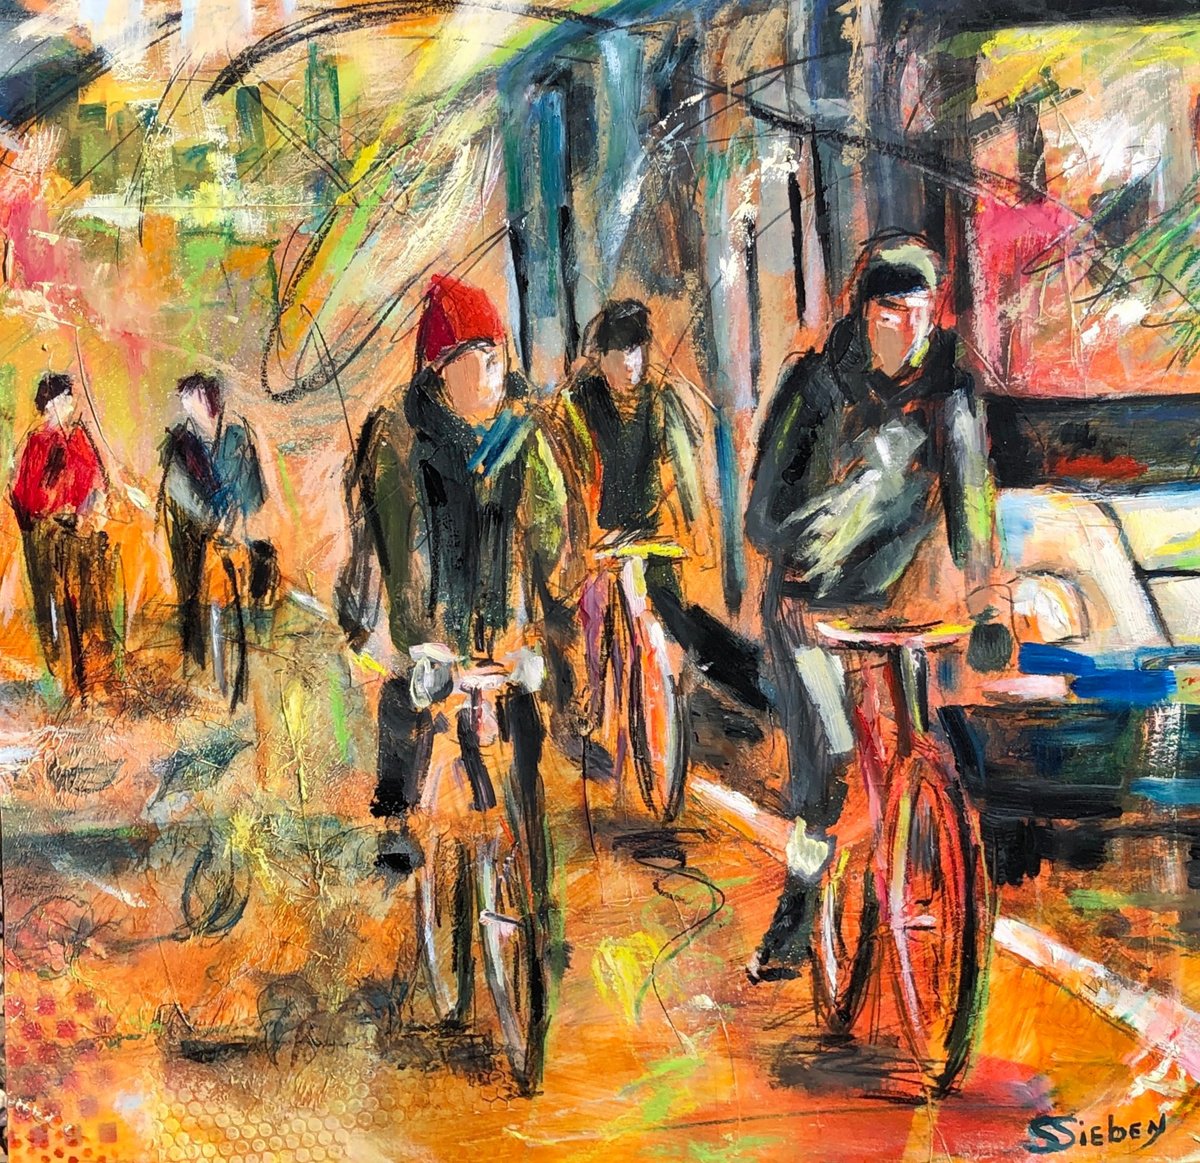 Bicycle Lane by Sharon Sieben